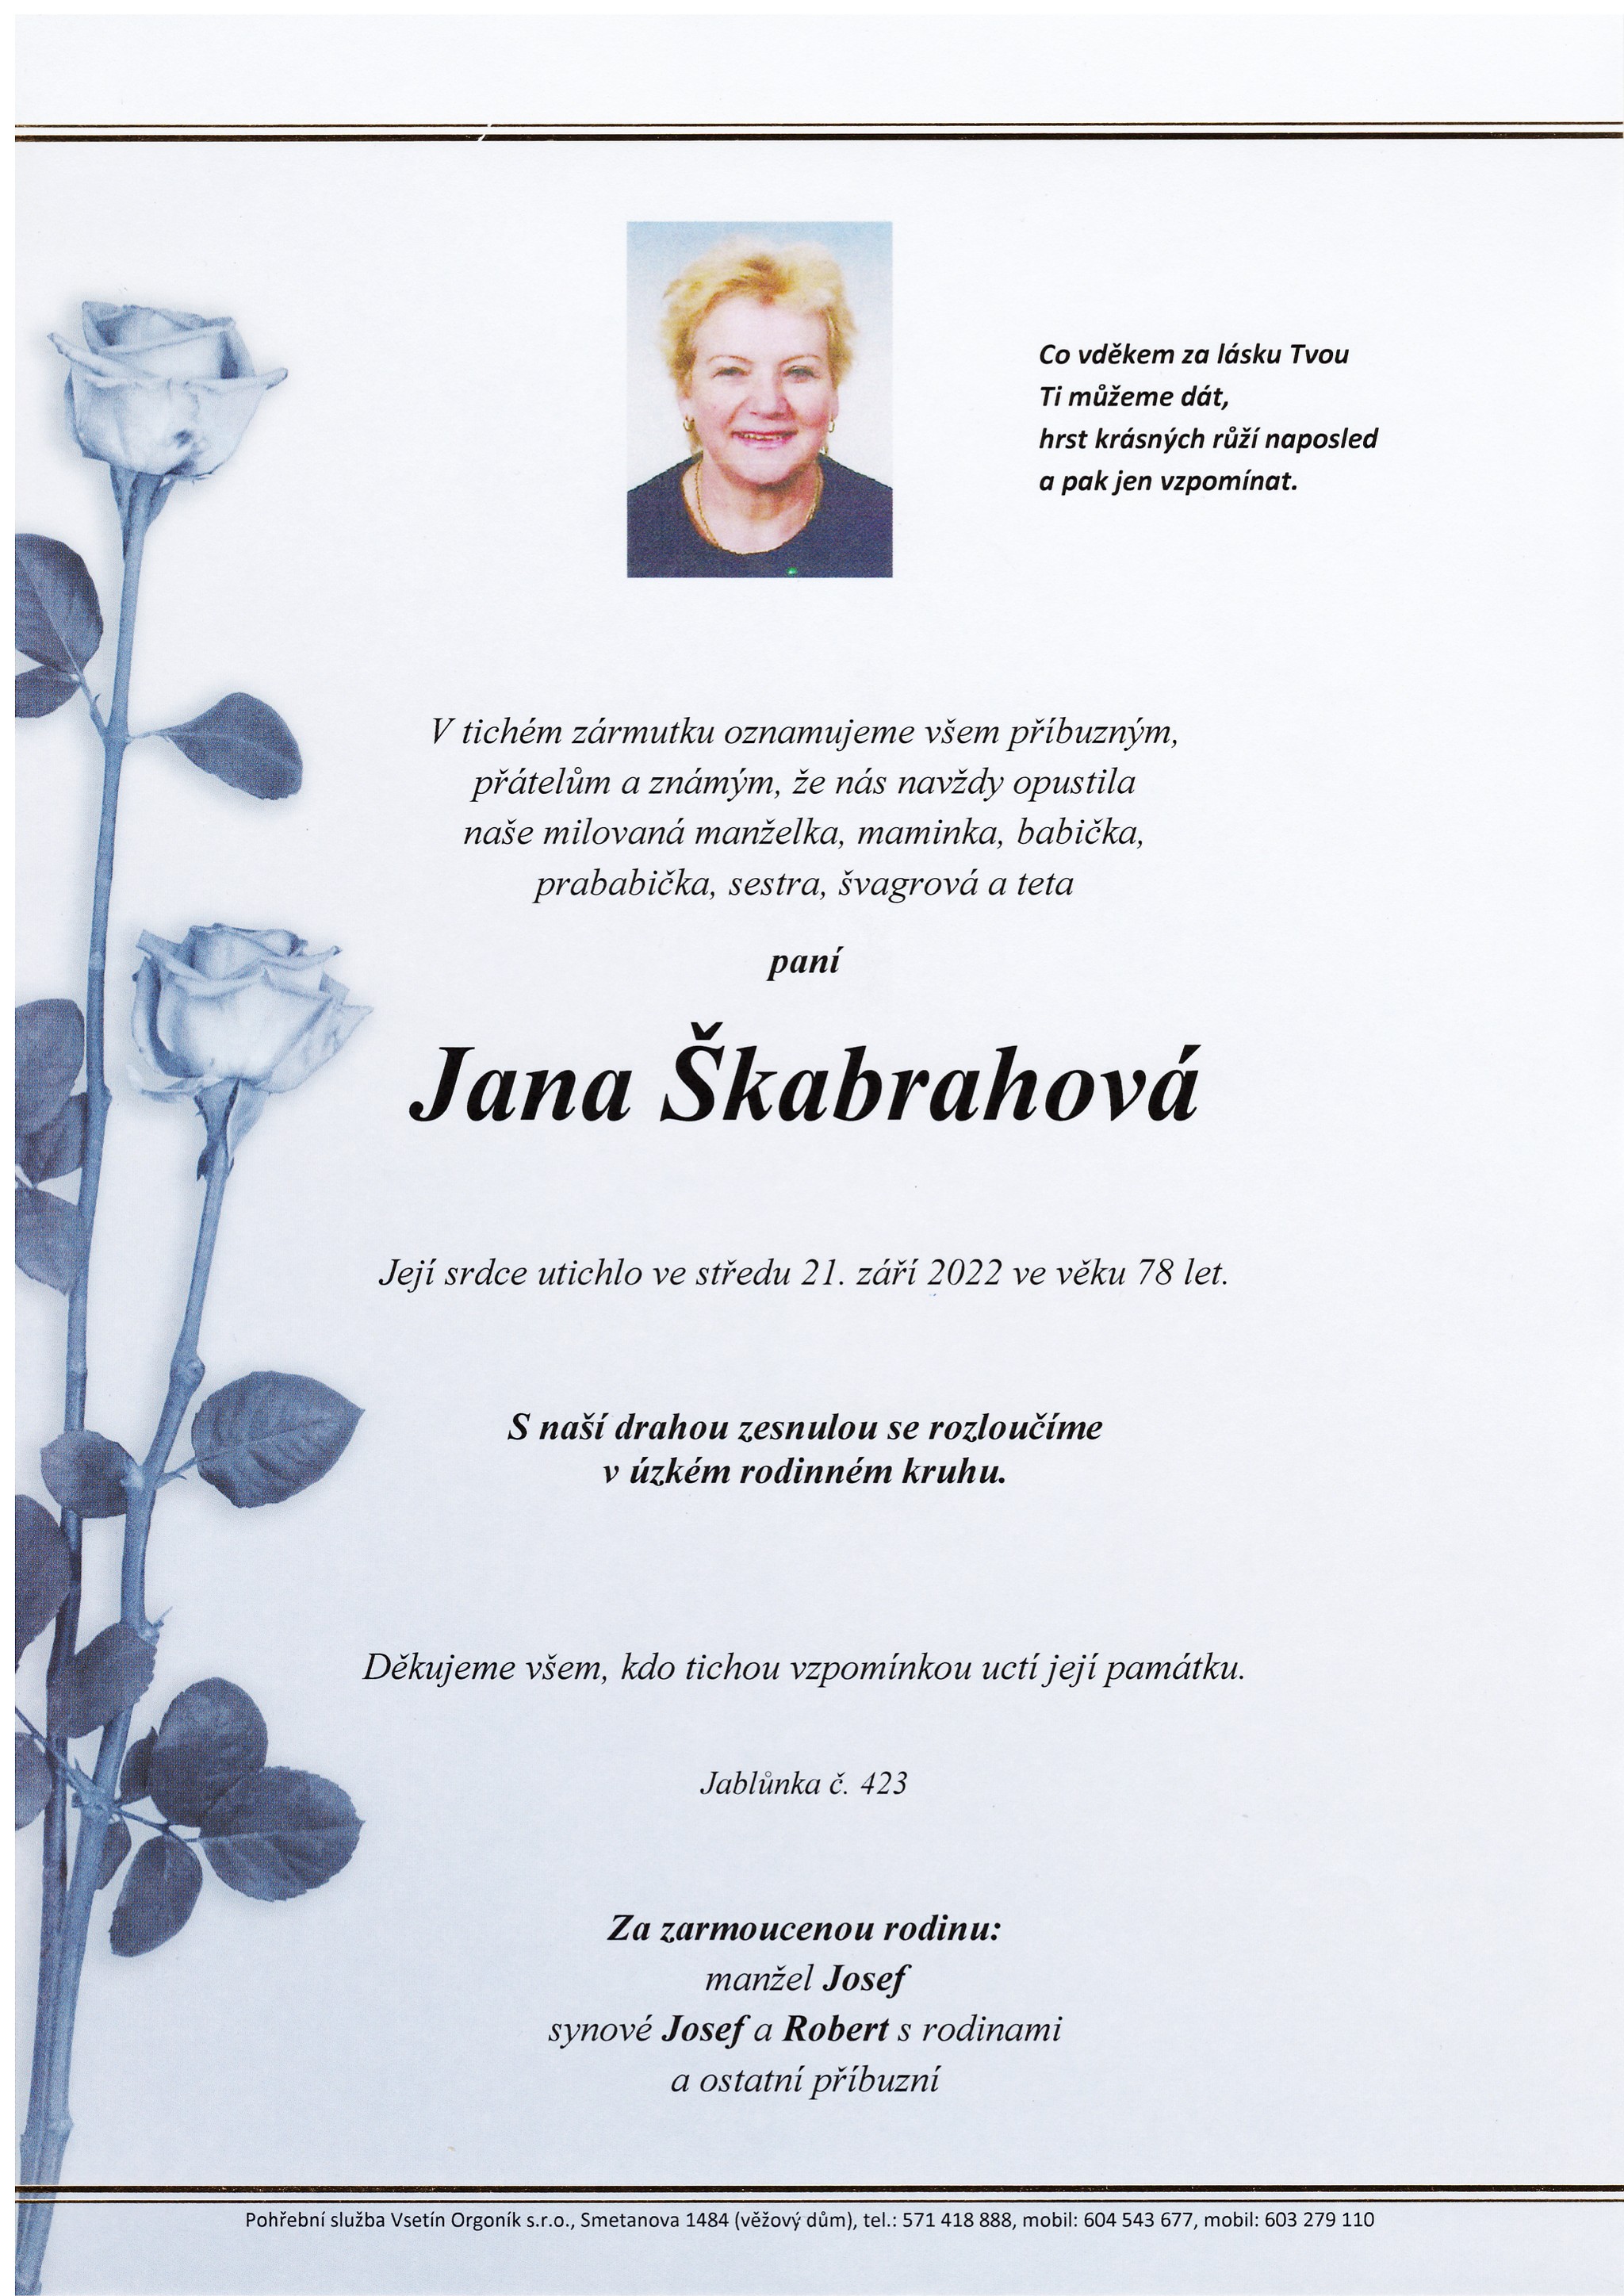 Jana Škabrahová